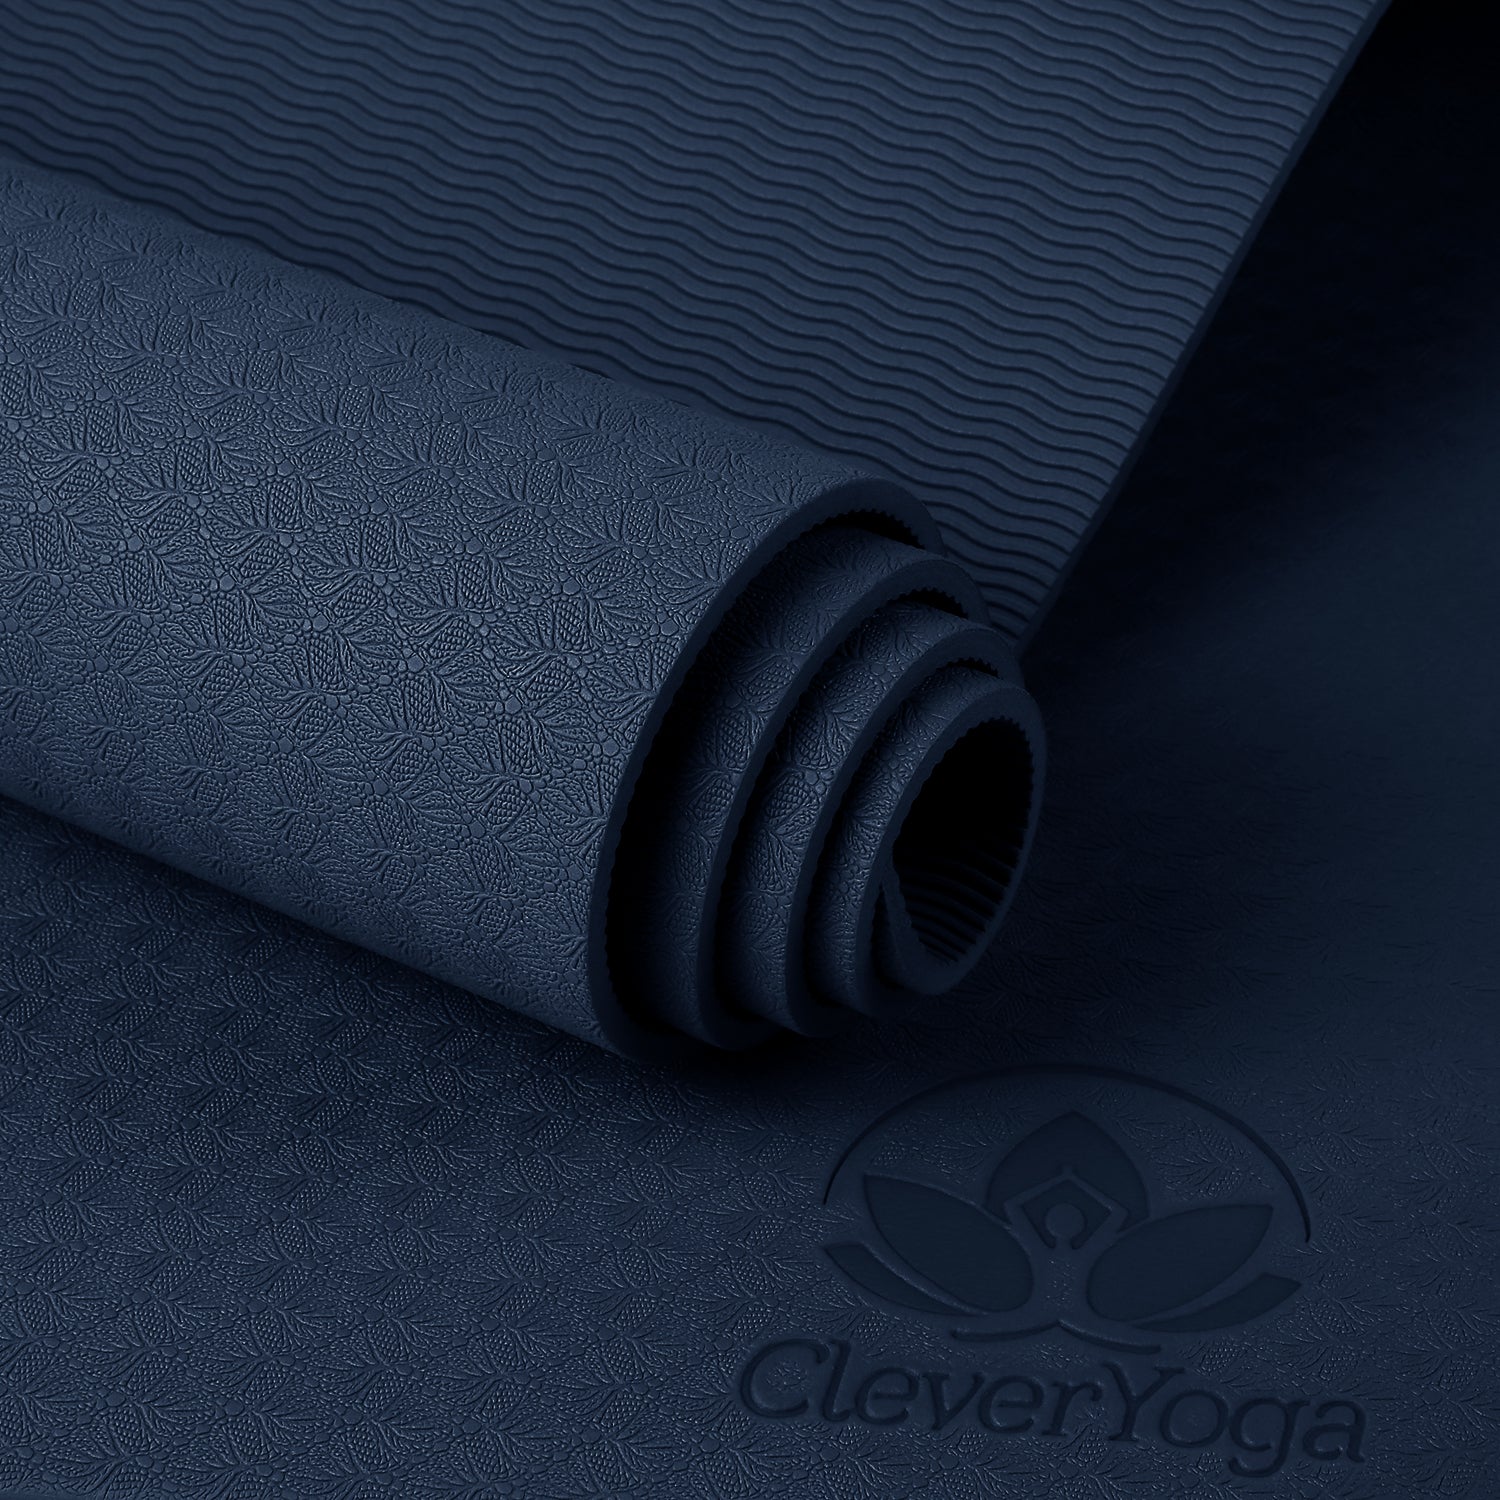 Clever Yoga YogiOnTheGo Foldable Travel Yoga Mat